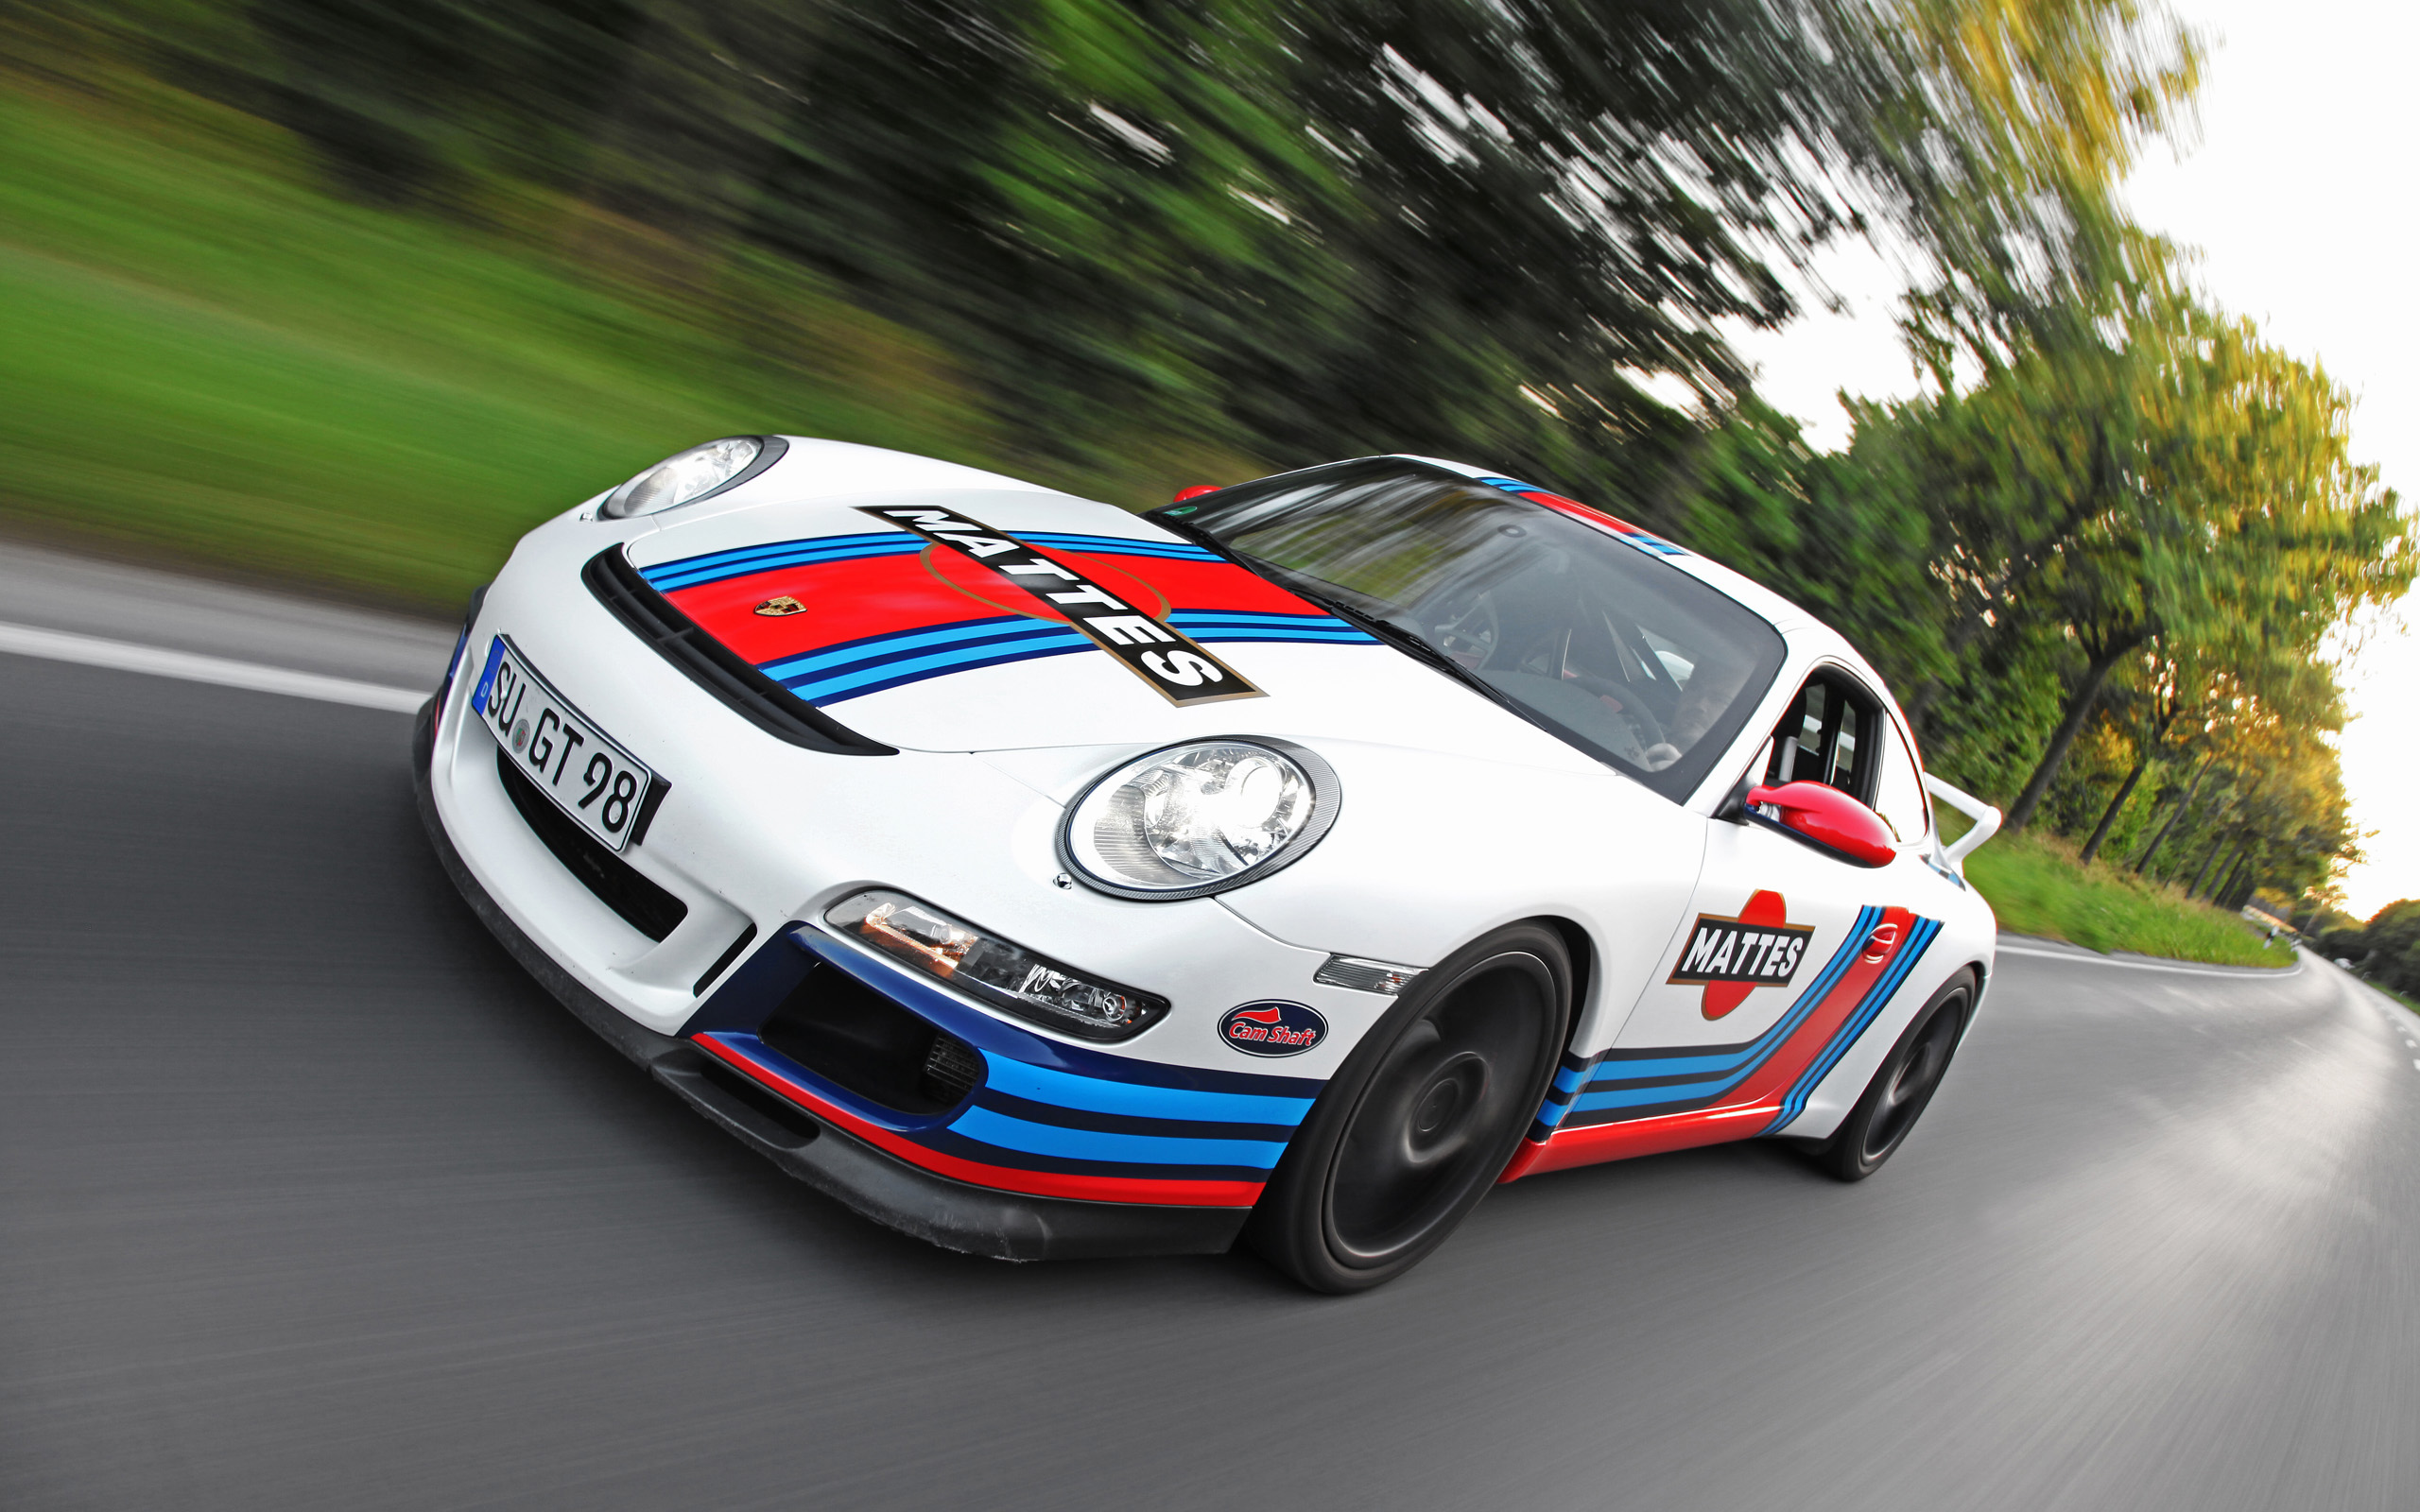 2013, Cam shaft, Porsche, 997, Gt3, Tuning, Race, Racing, Gg Wallpaper